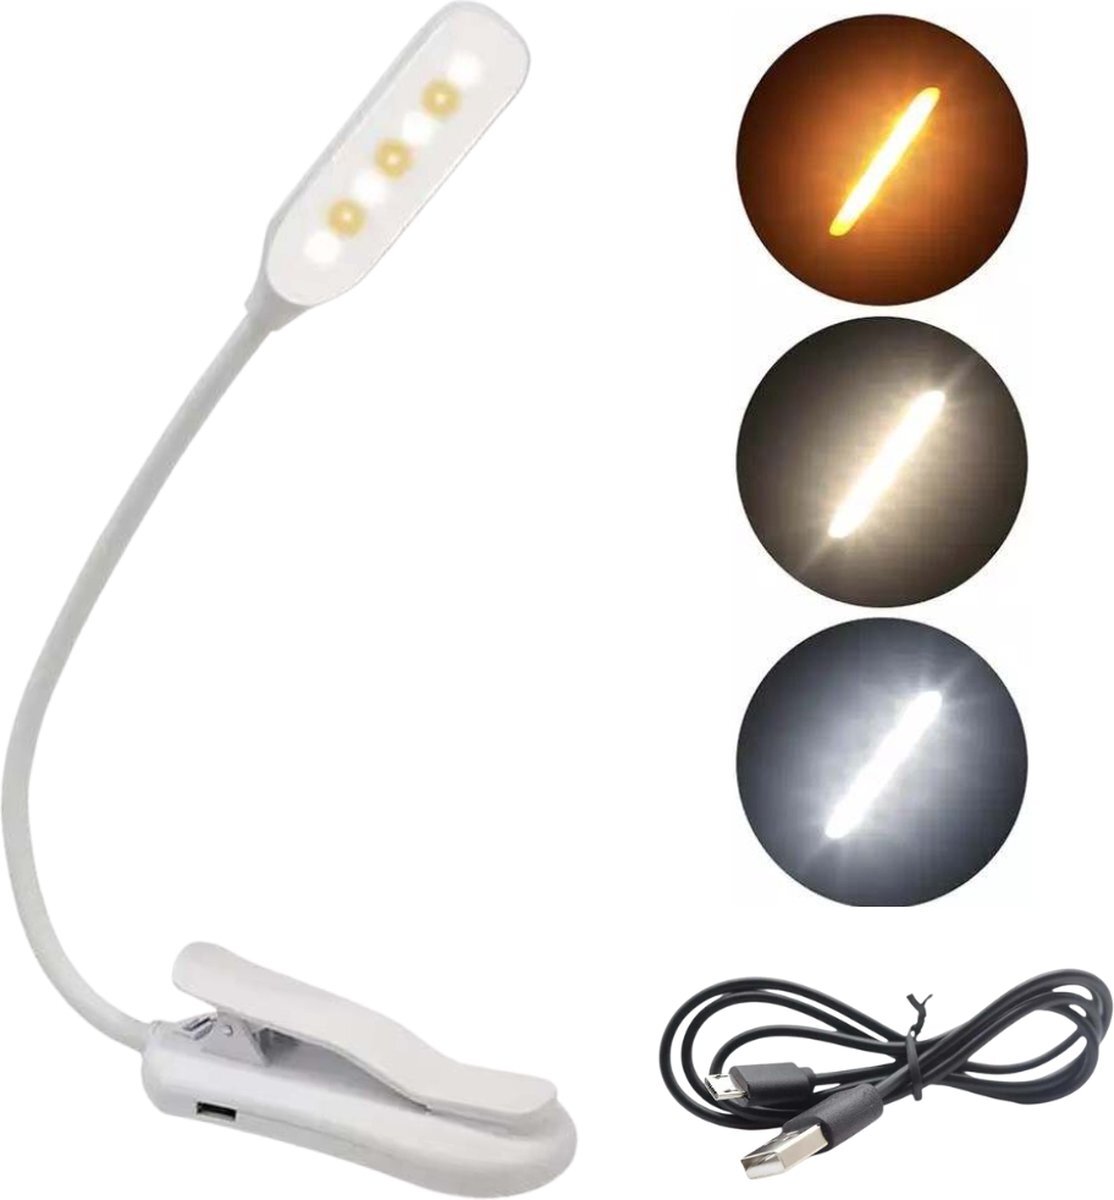 XEMM Leeslampje voor boek - Leeslampje met klem - Leeslampje voor in bed - Leeslamp - USB oplaadbaar - 3 lichtstanden - Wit - Flexibele nek - Bedlampje